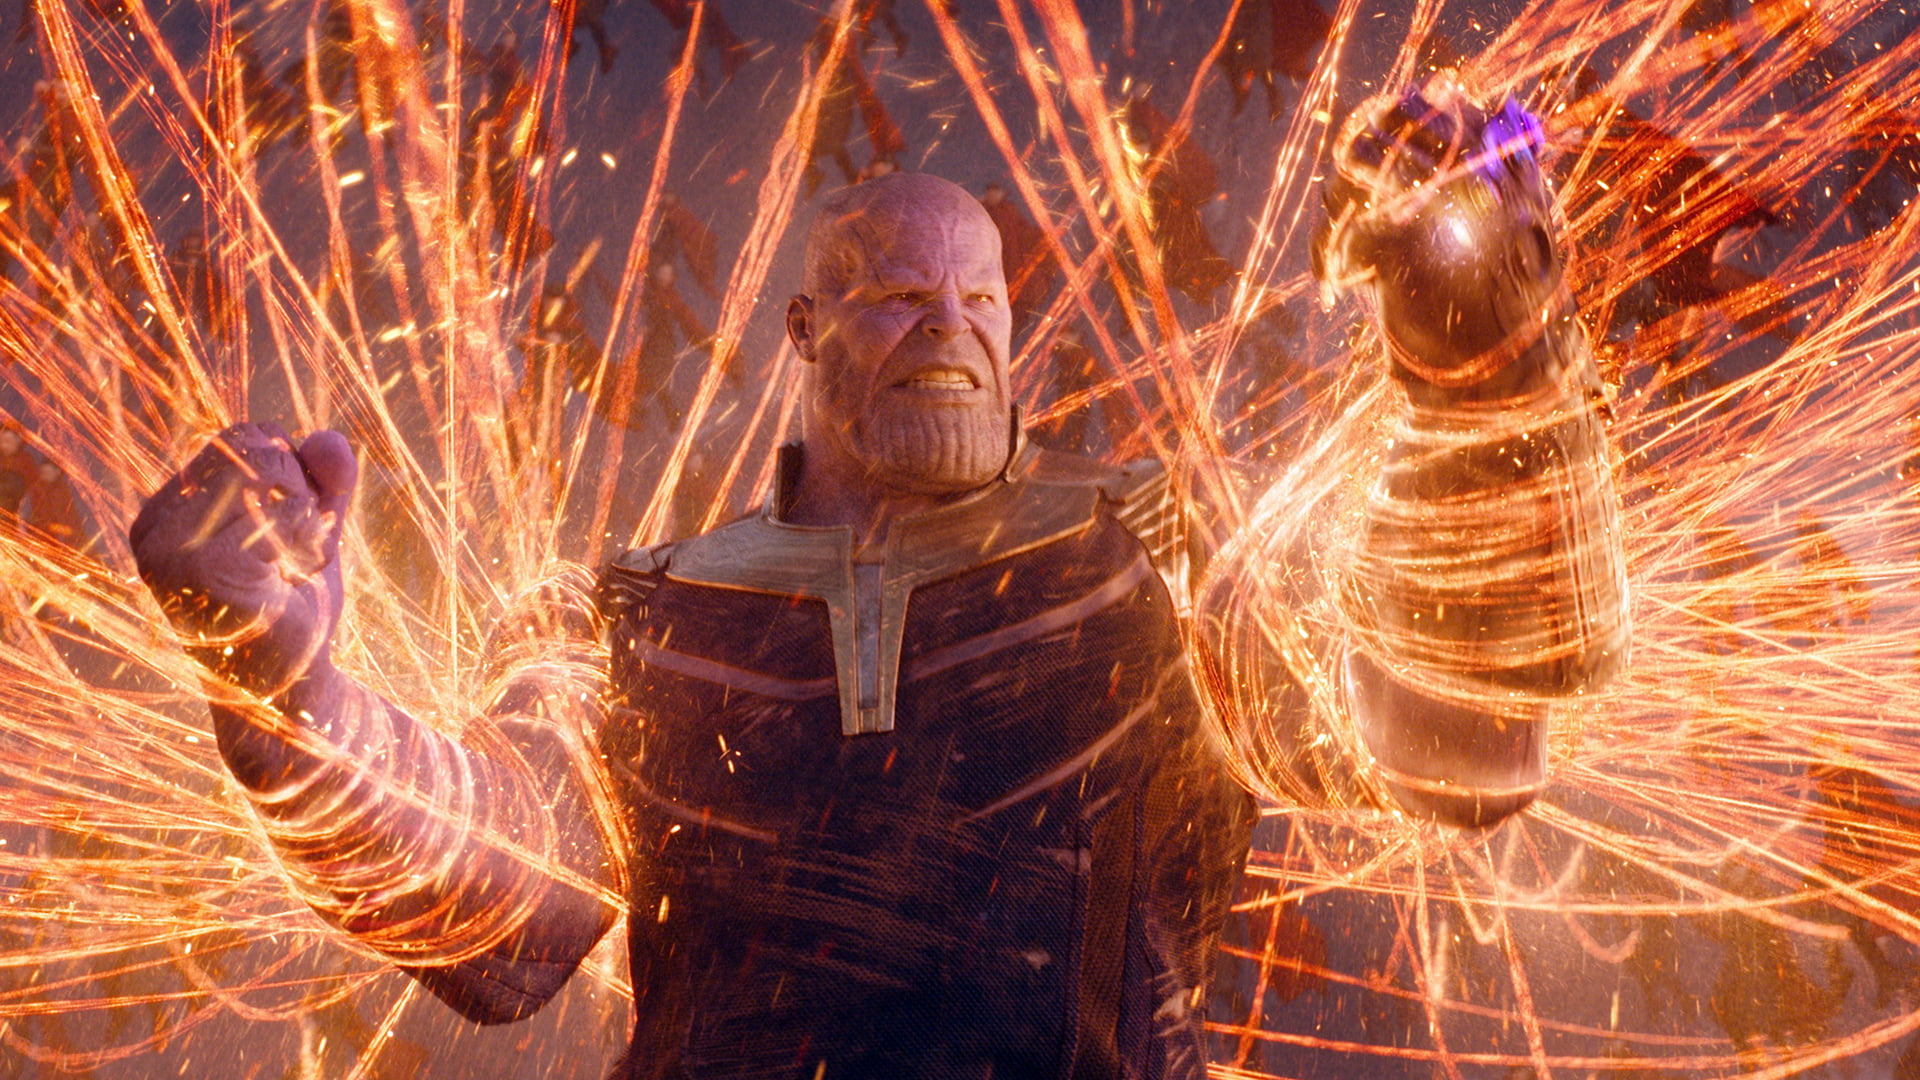 Marvel Thanos wallpaper, Marvel Cinematic Universe, The Avengers, Avengers Infinity War